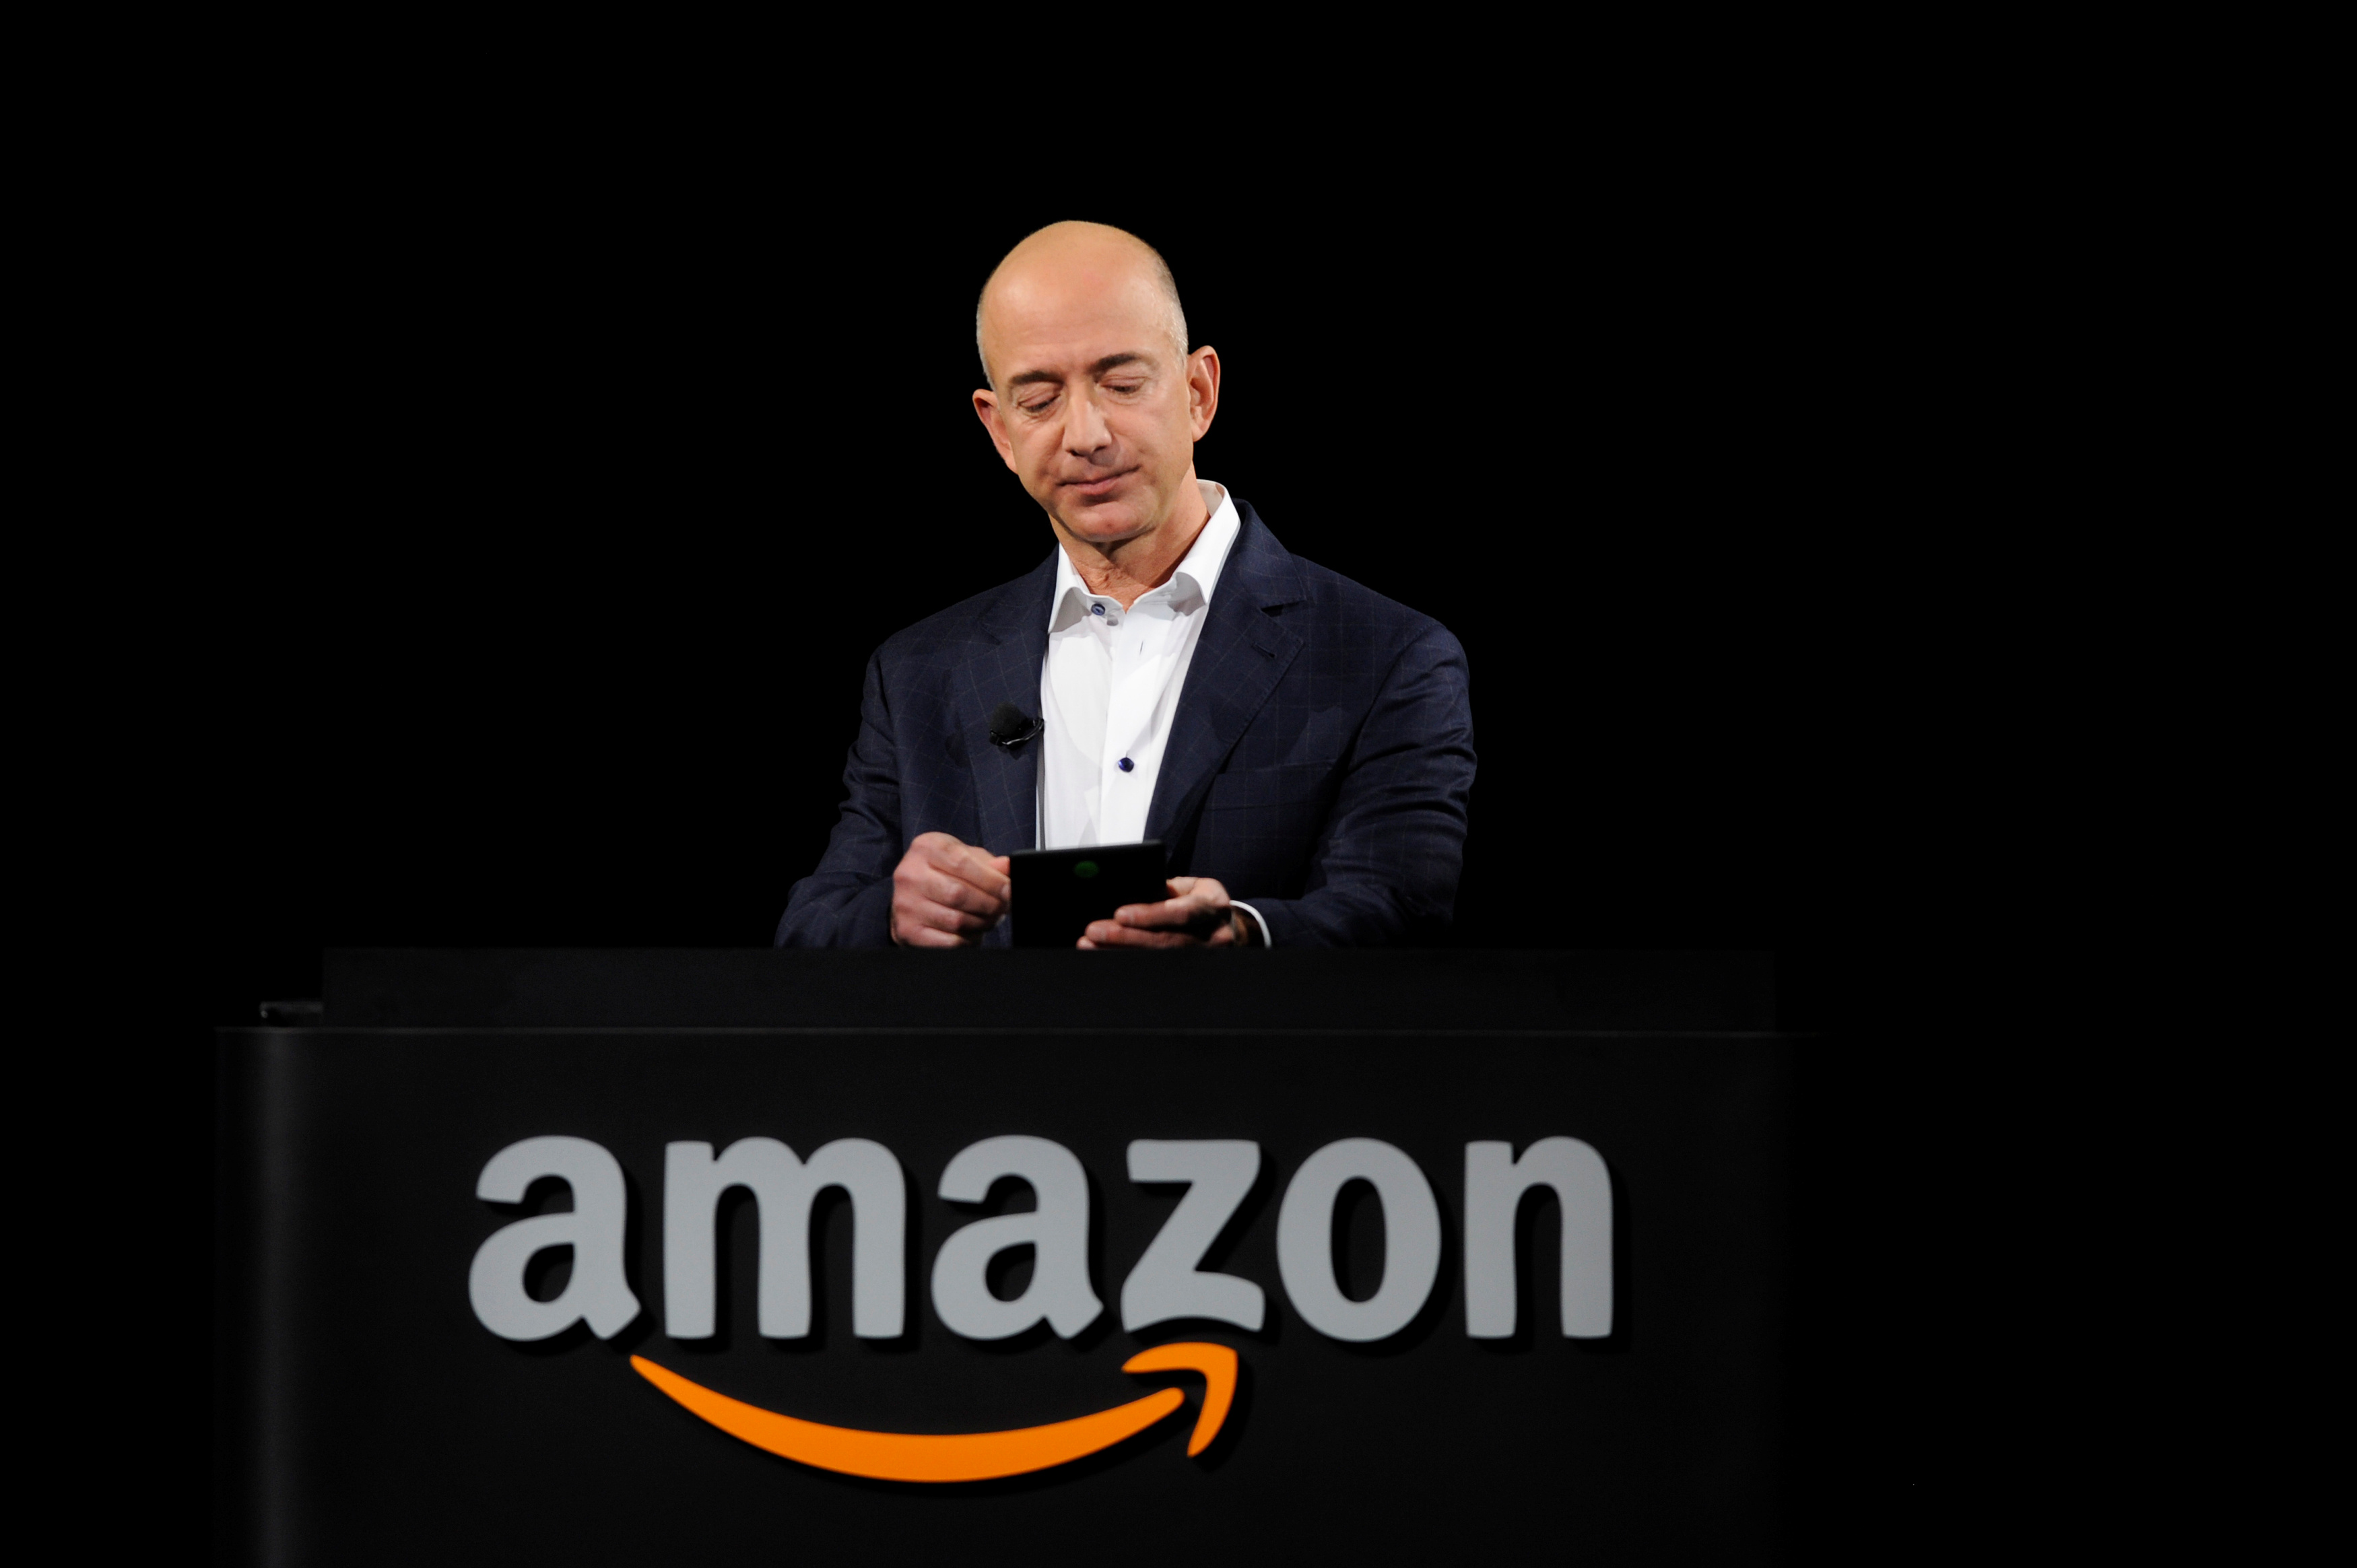 Foto de archivo del fundador de Amazon, Jeff Bezos (REUTERS/Gus Ruelas)